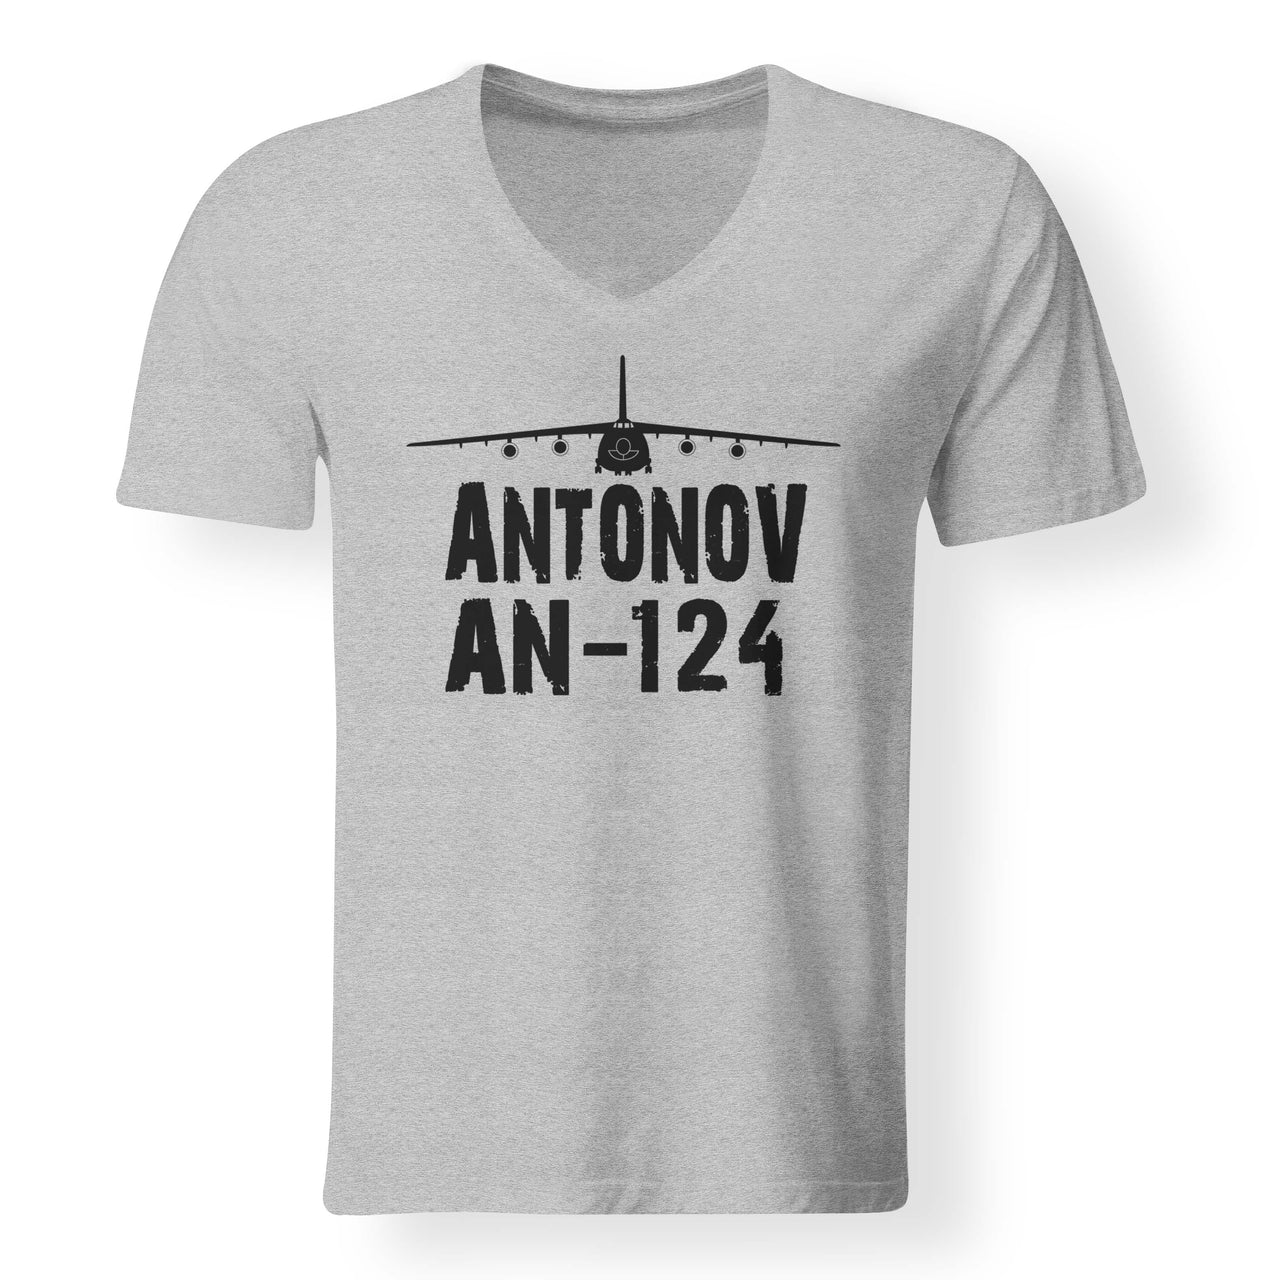 Antonov AN-124 & Plane Designed V-Neck T-Shirts